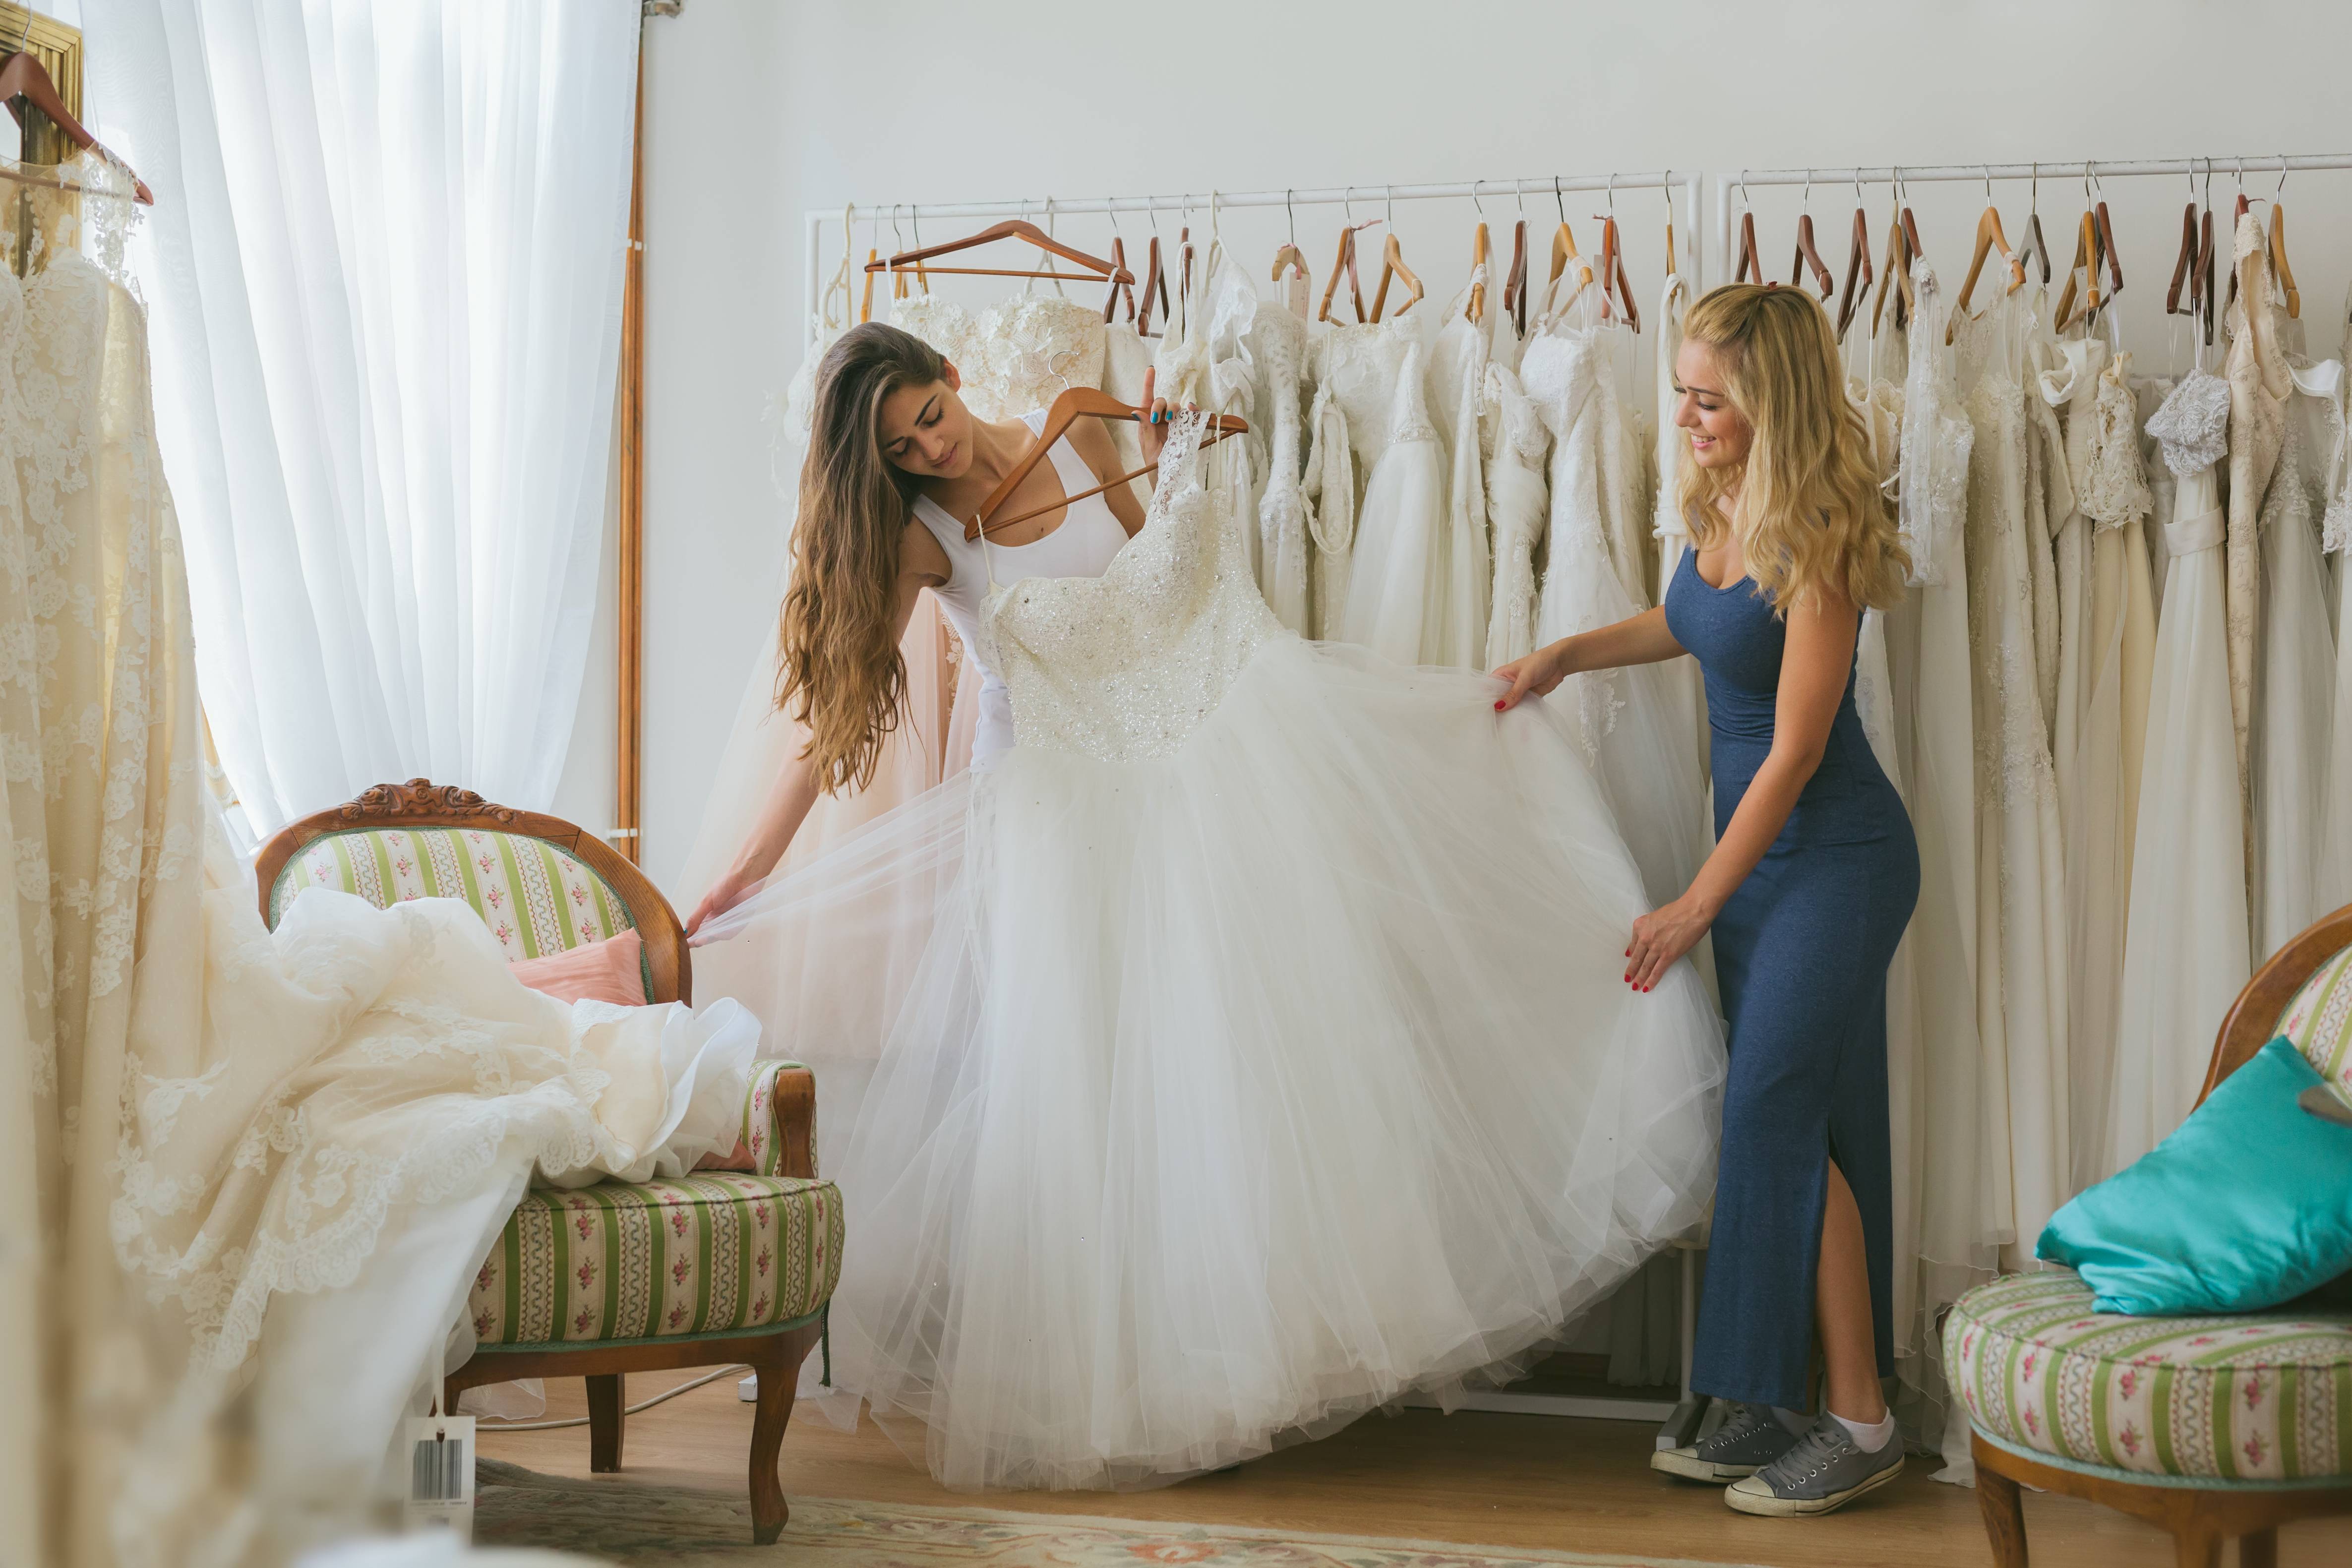 ? кто покупает свадебное платье ❤️ для невесты на церемонию?